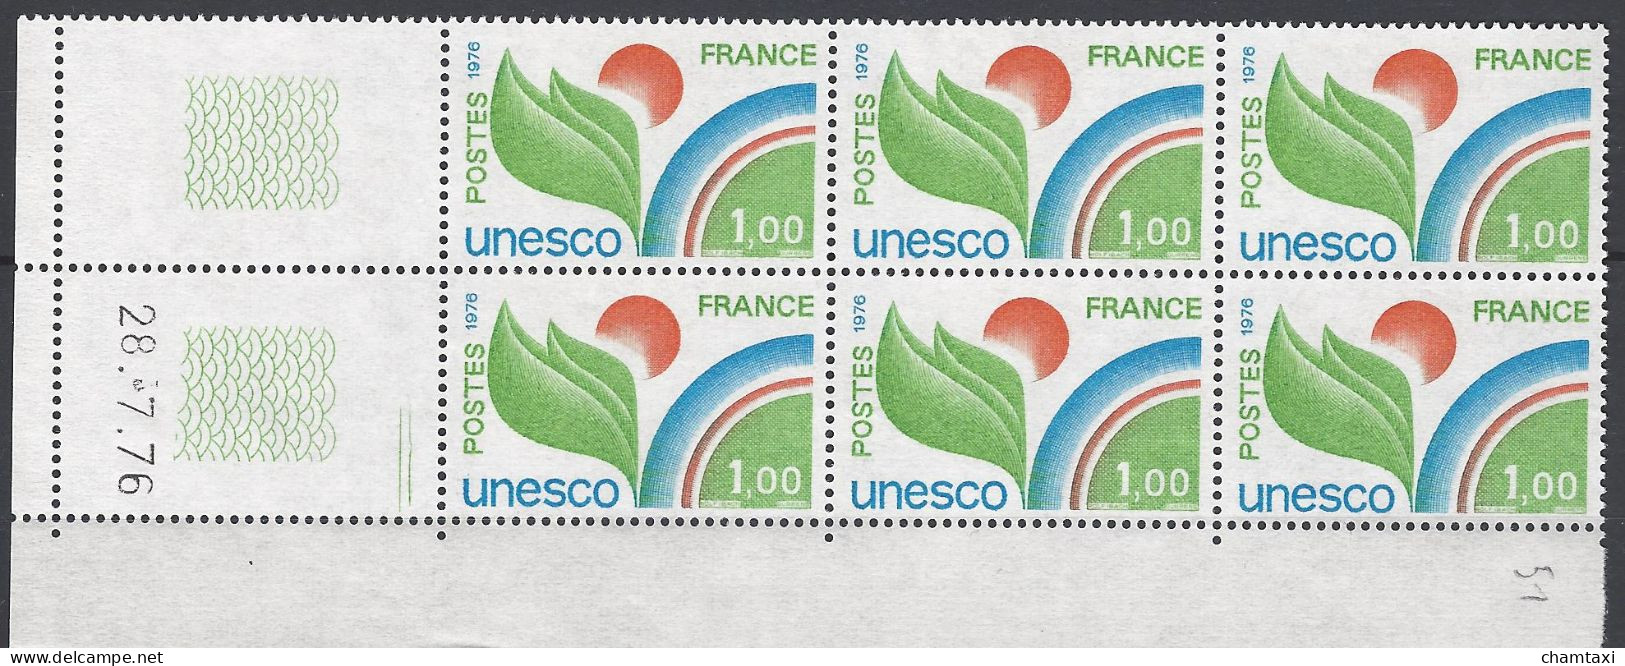 CD 51 FRANCE 1976 TIMBRE SERVICE UNESCO COIN DATE 51 : 28 / 7 / 76 - Servizio